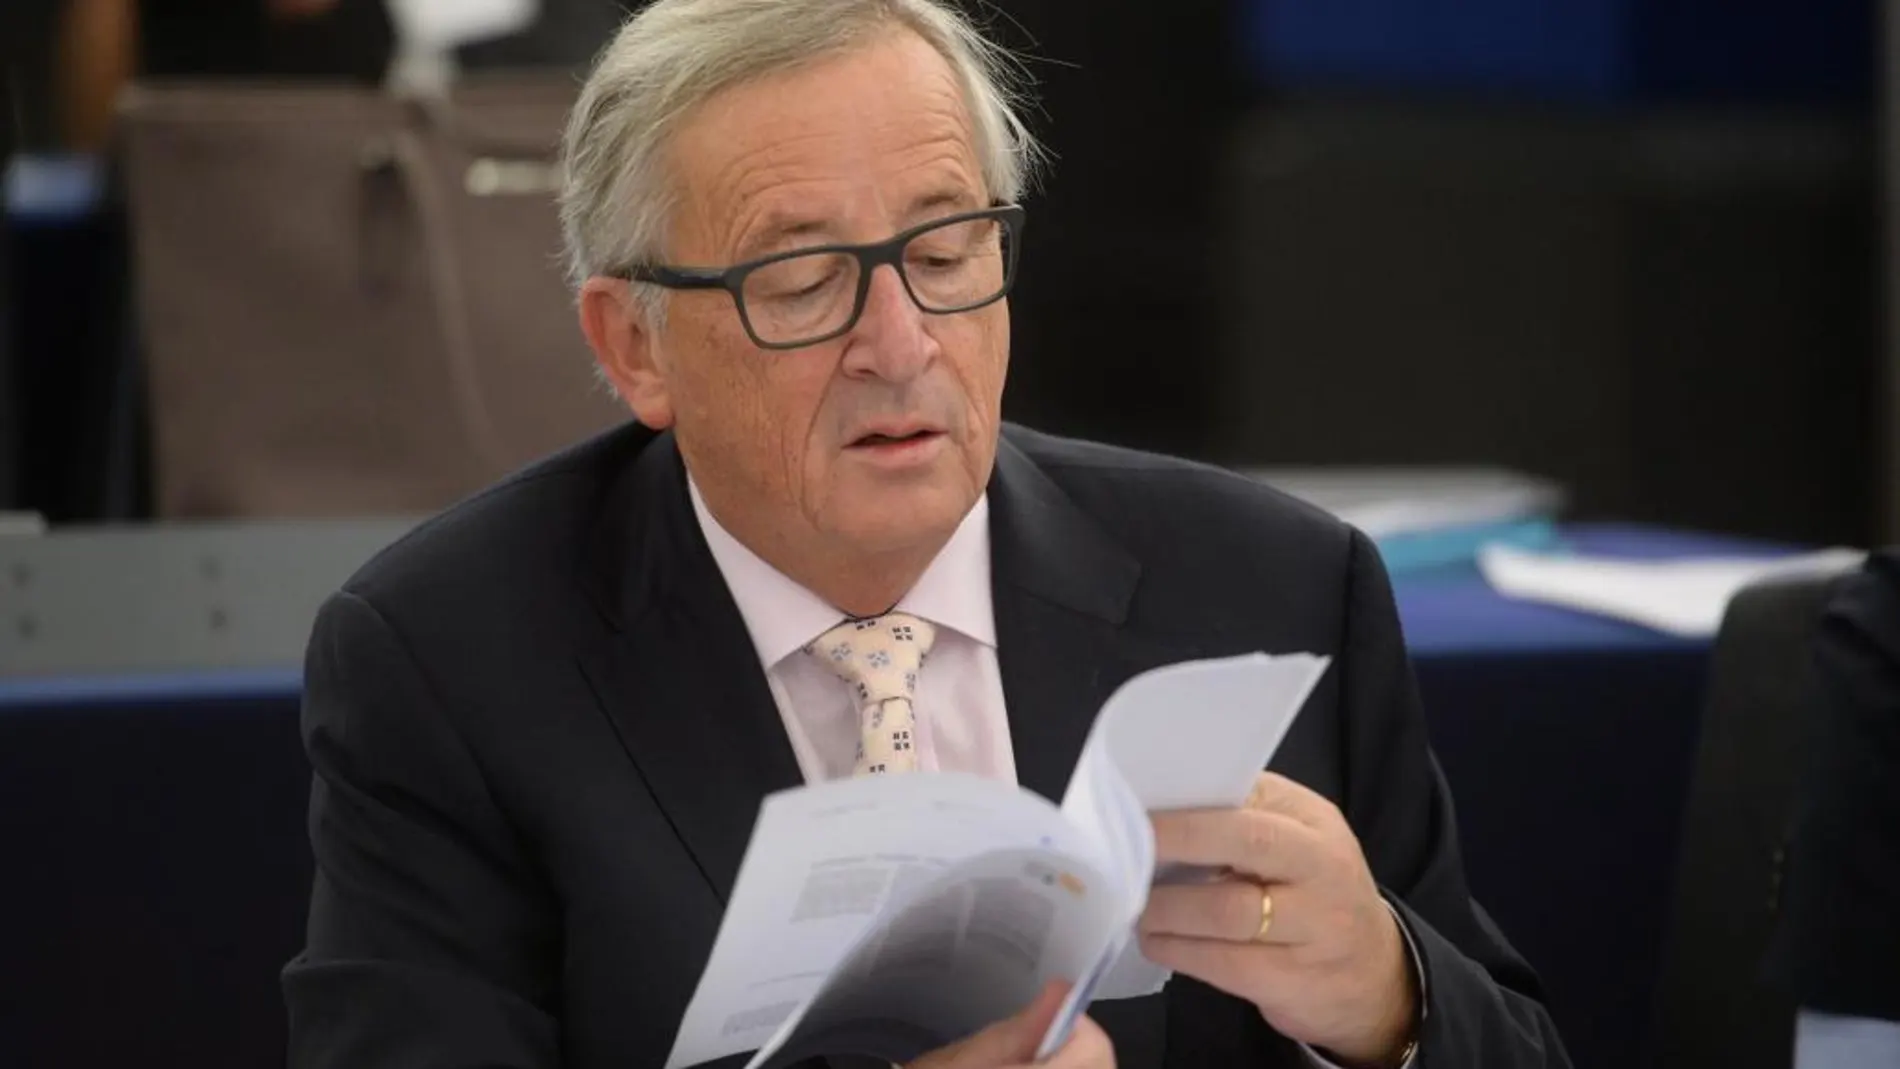 El presidente de la Comisión Europea, Jean-Claude Juncker, asiste a una sesión en el Parlamento Europeo en Estrasburgo /Efe